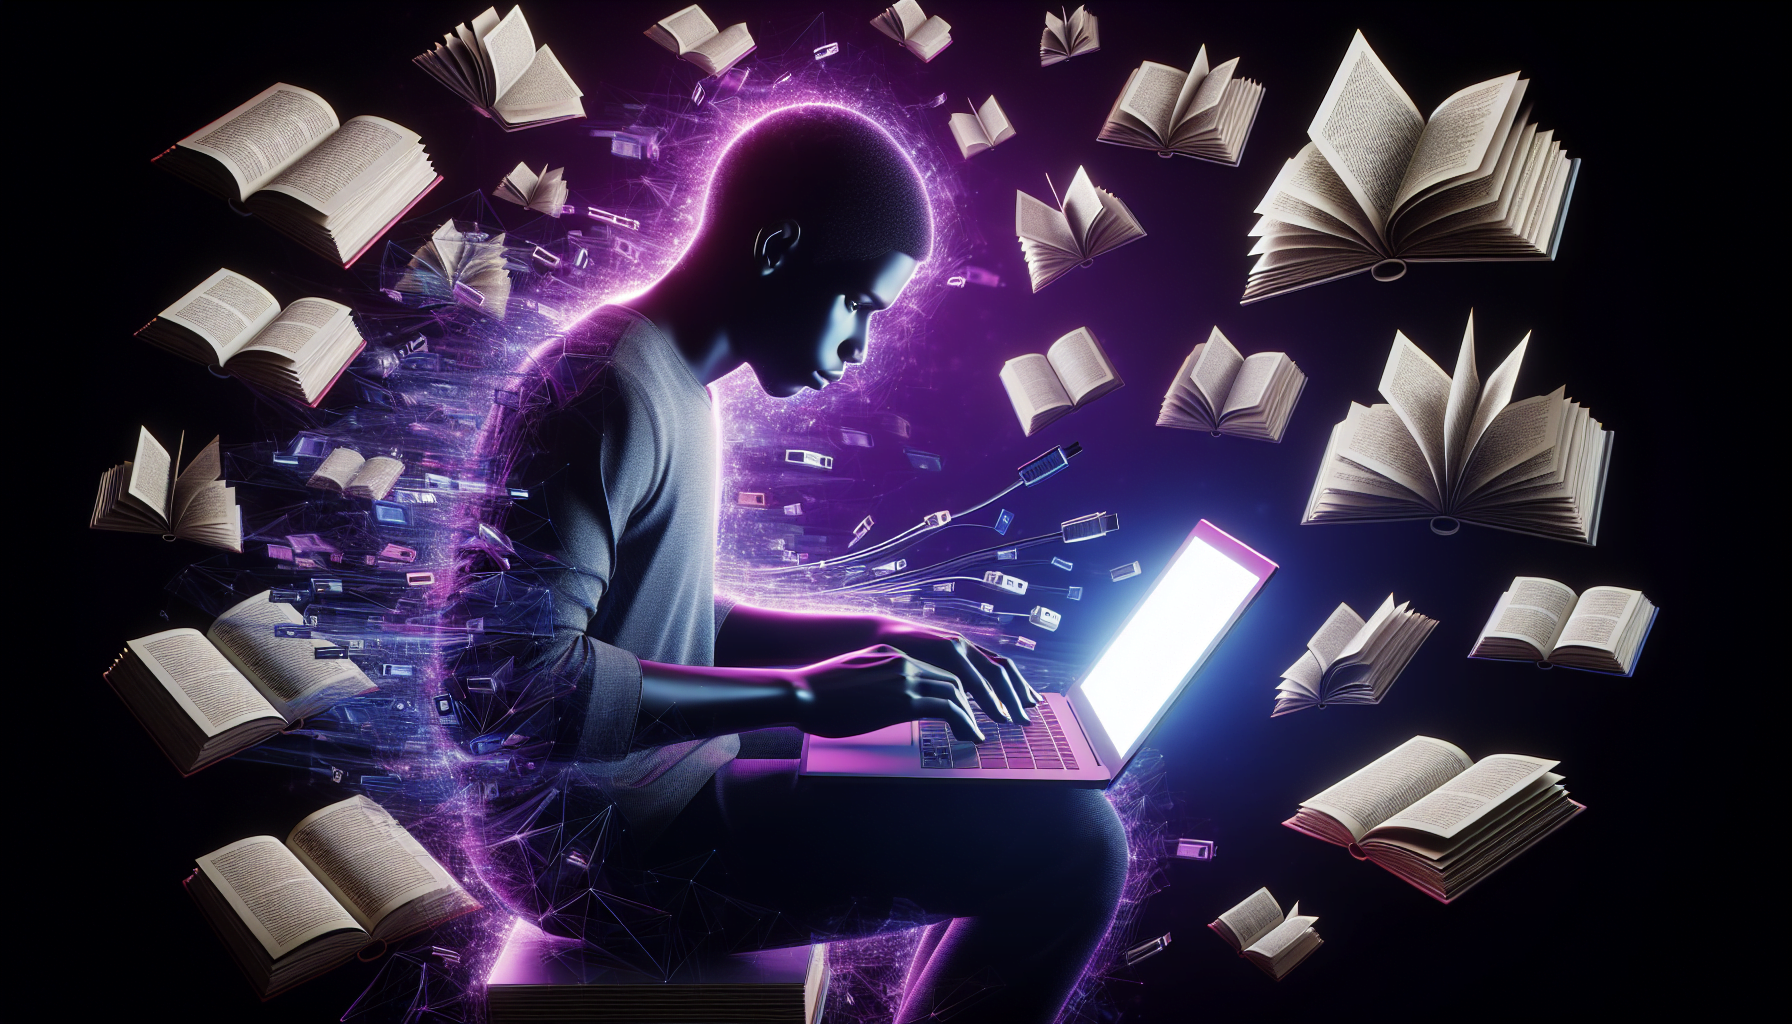 programmeur africain codant ordinateur portable lueur violette livres flottants environnement interesting.JPG